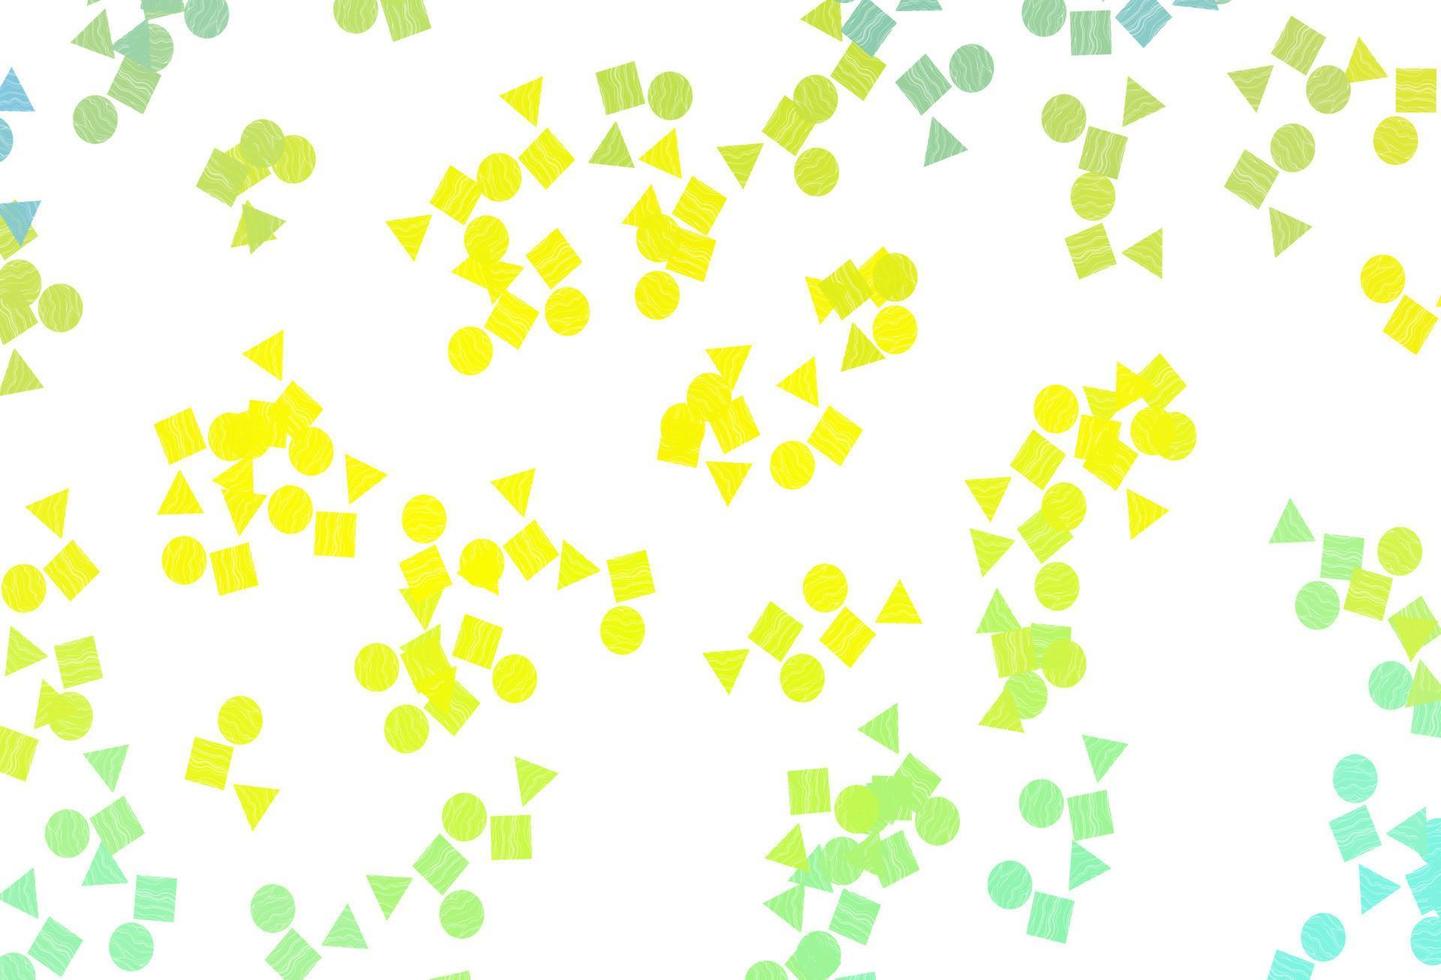 modelo de vetor verde e amarelo claro com cristais, círculos, quadrados.